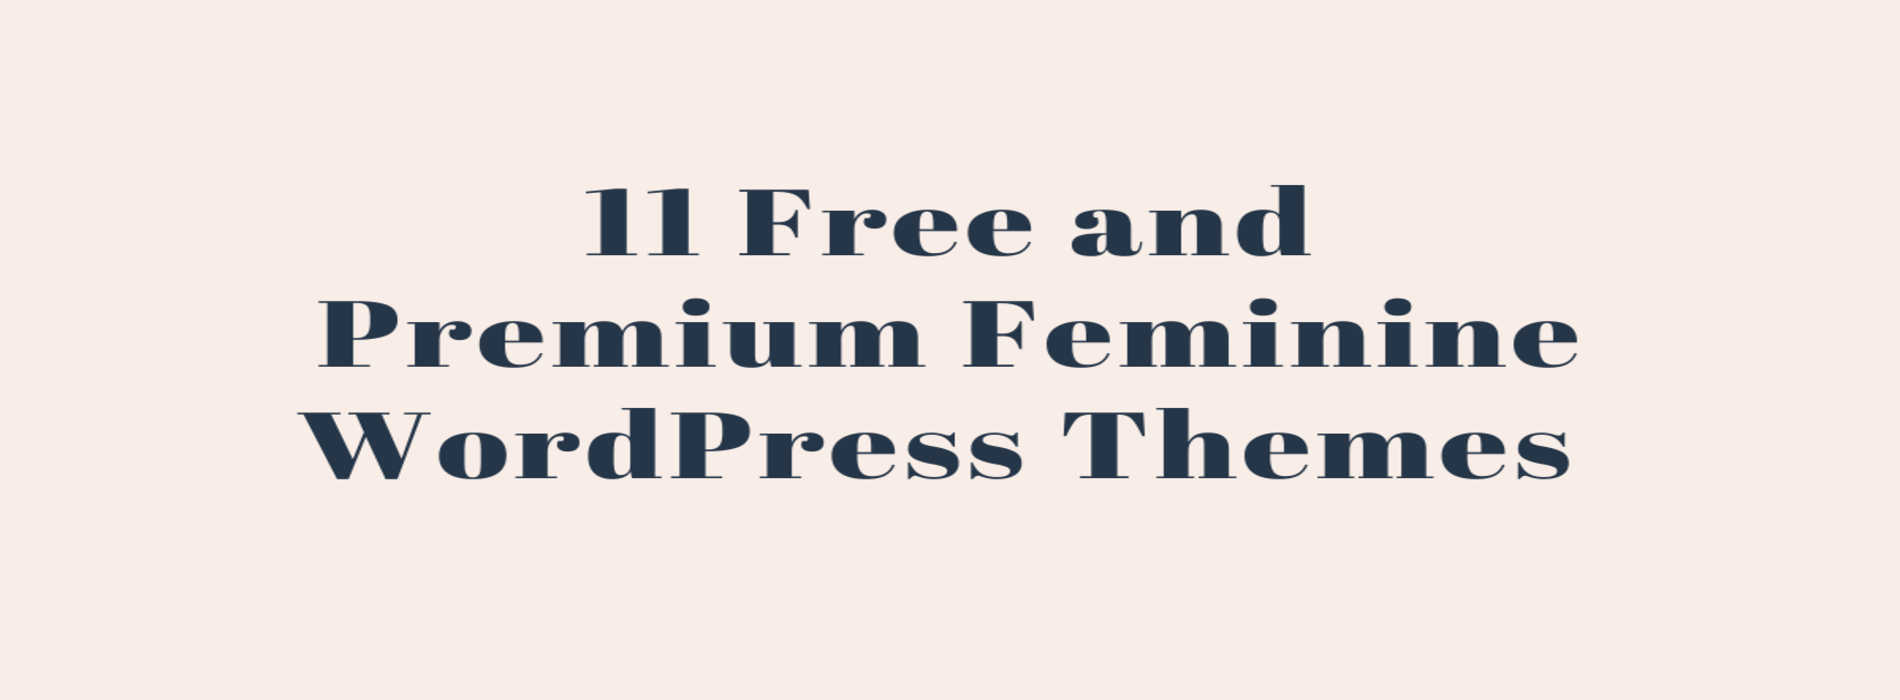 11 Free and Premium Feminine WordPress Themes